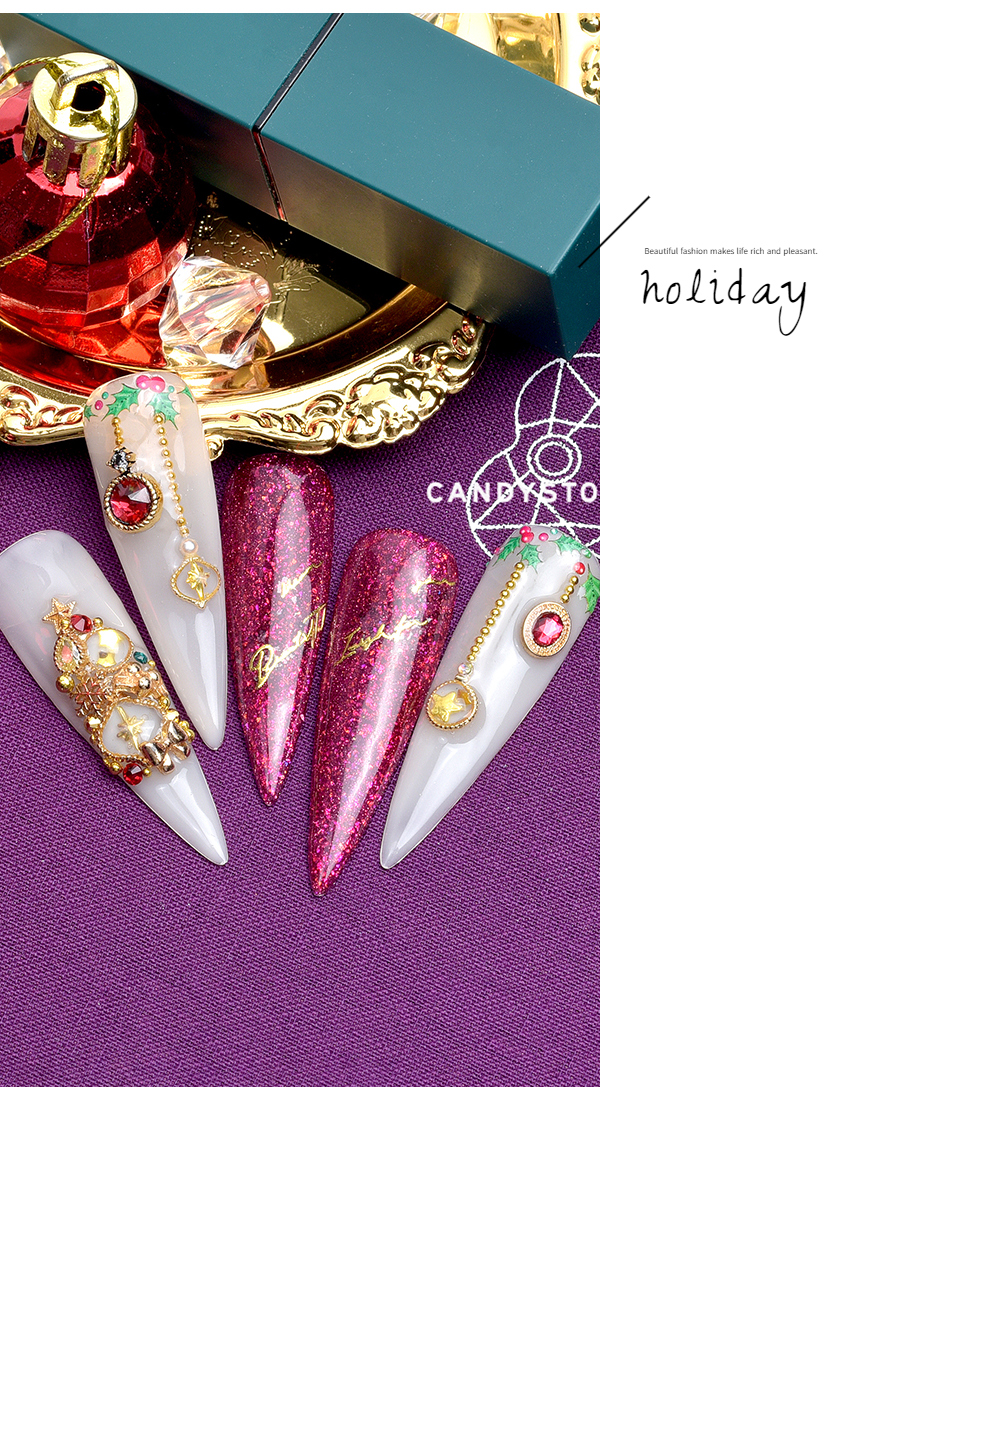 '크리스마스 네일아트, 오너먼트 프레임 네일 파츠, 겨울네일아트, 귀여운 네일아트, Christmas nail art, ornament frame nail parts, winter nail art, cute nail art, クリスマスネイルアート、オーナメントフレームネイル